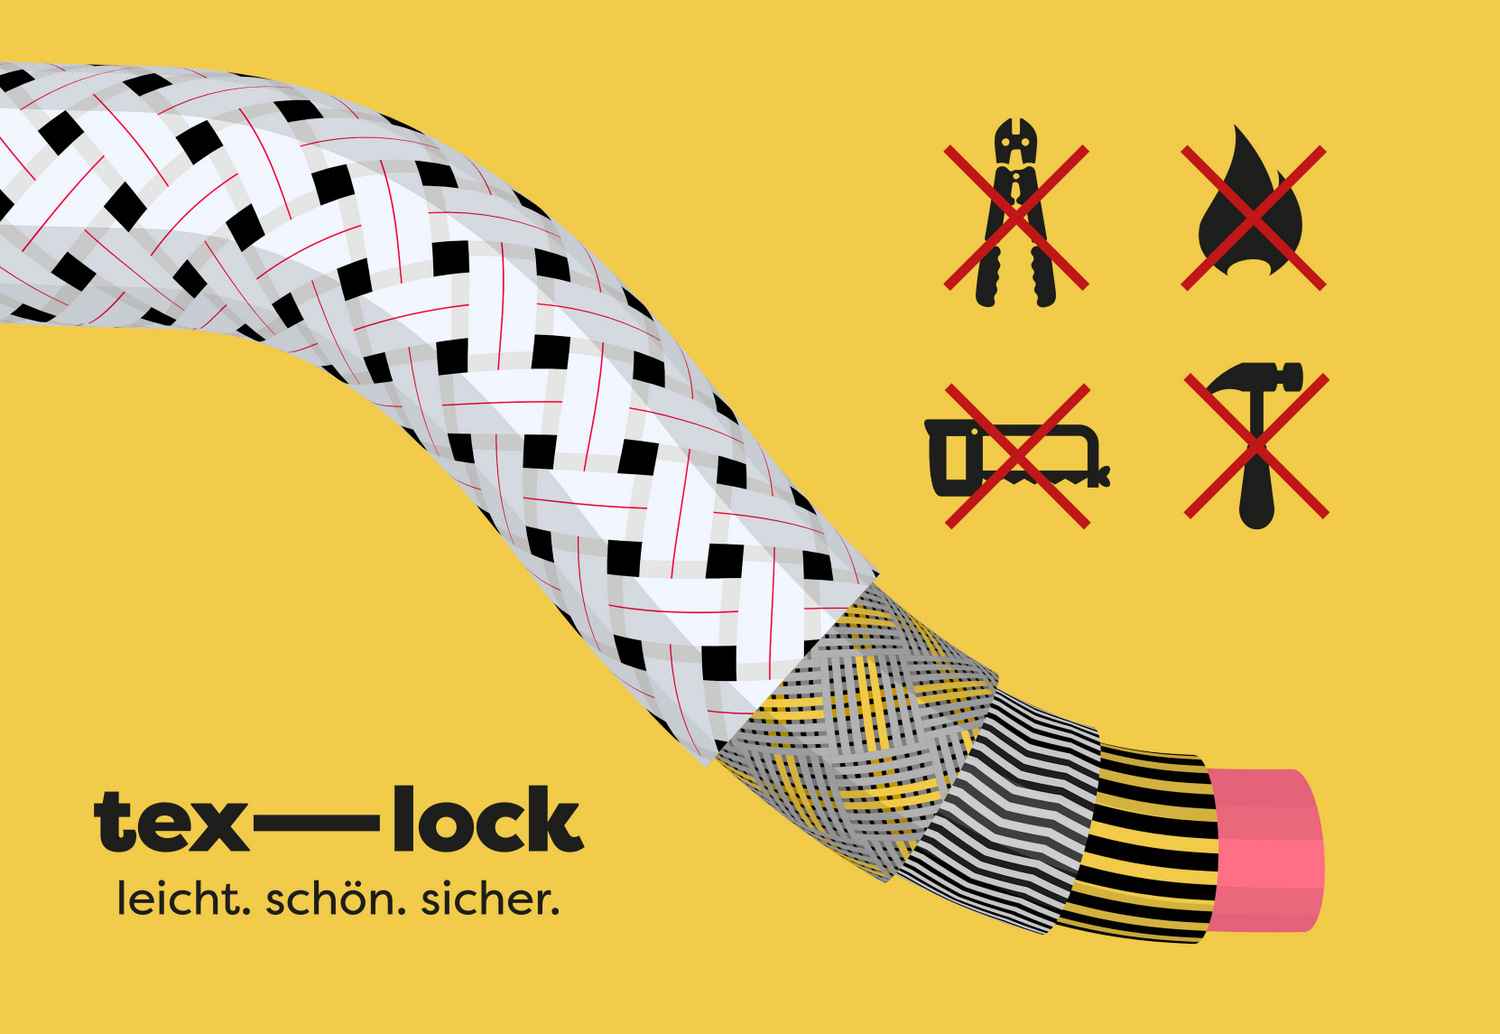 Tex-lock, el candado textil liviano, flexible y seguro, Leipzig (Alemania), 2017